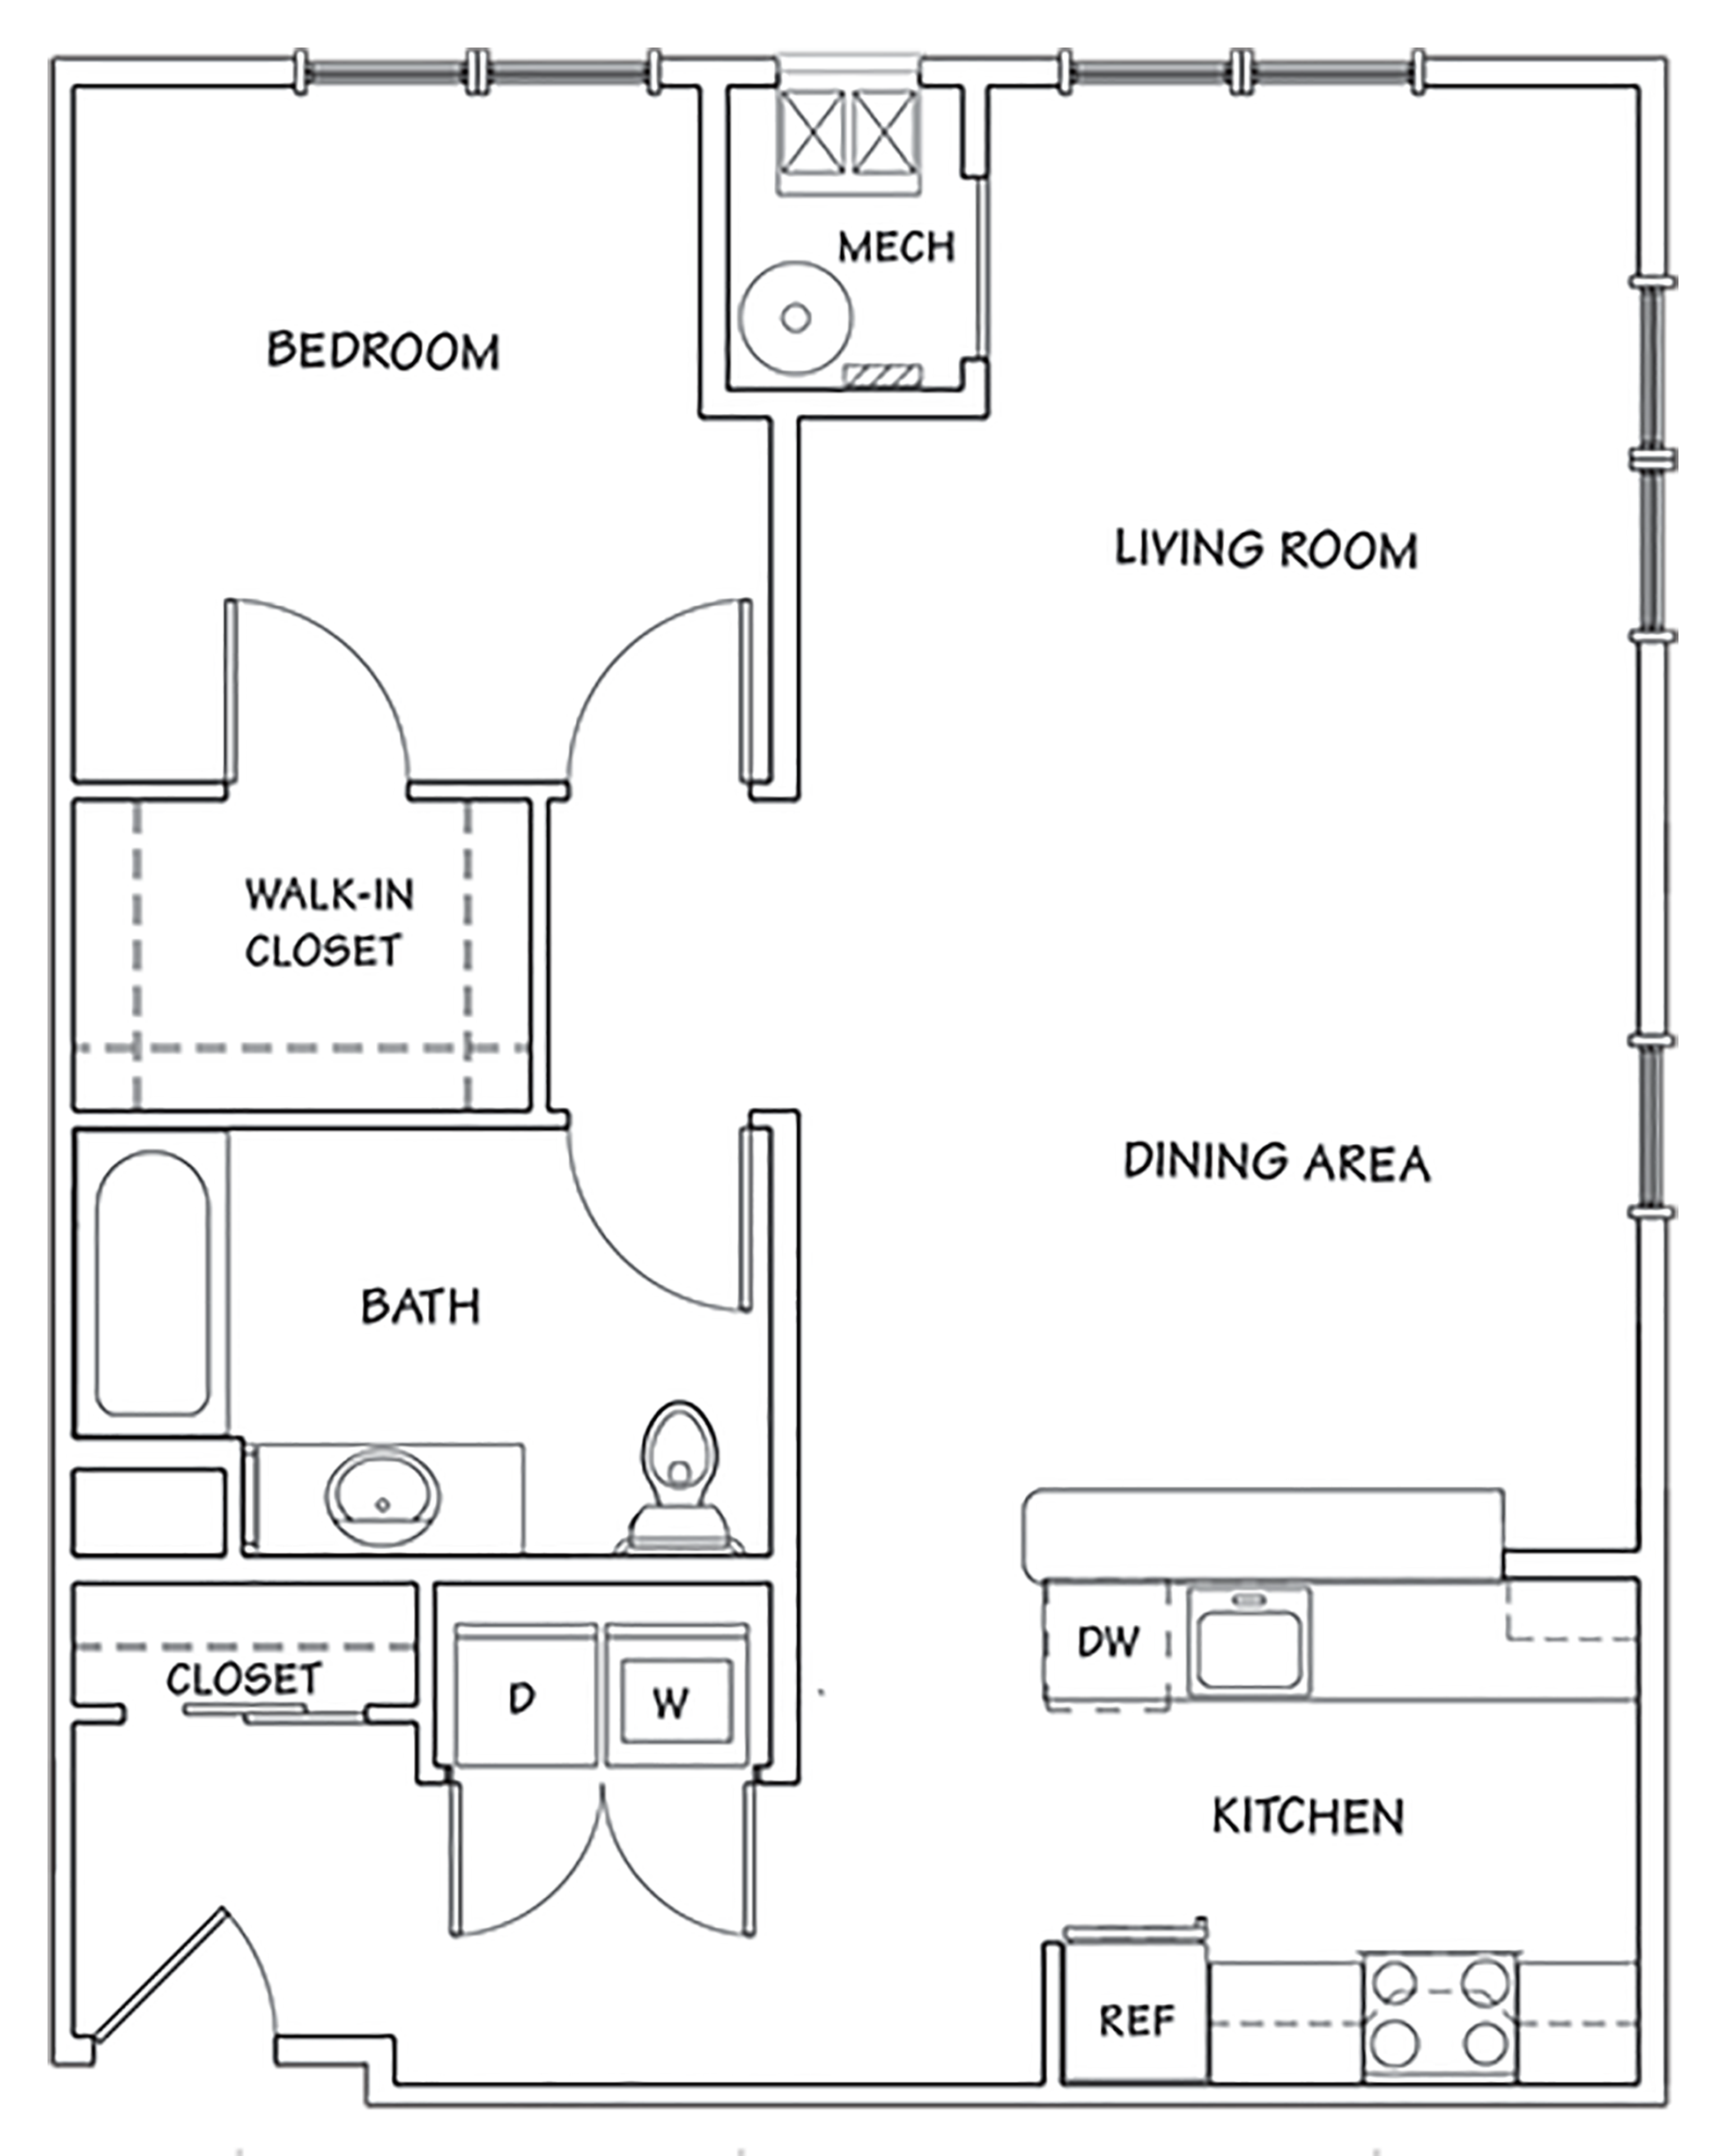 Helix at Xchange Asotria 1-bedroom floor plan